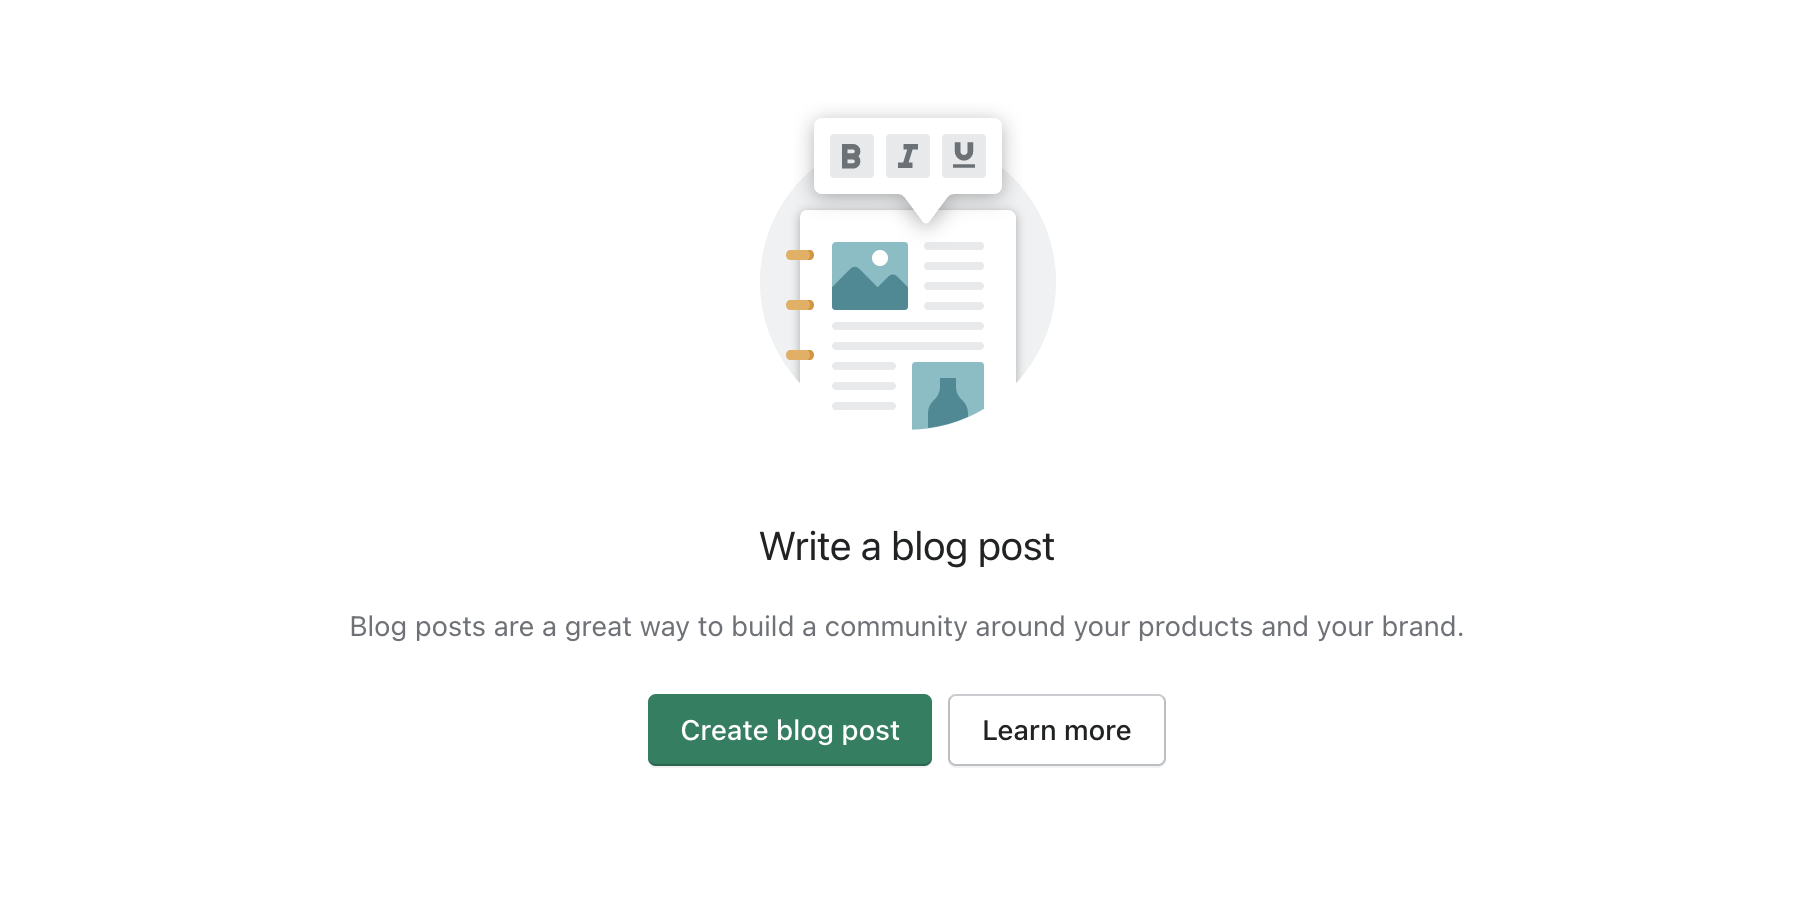 Create A Blog